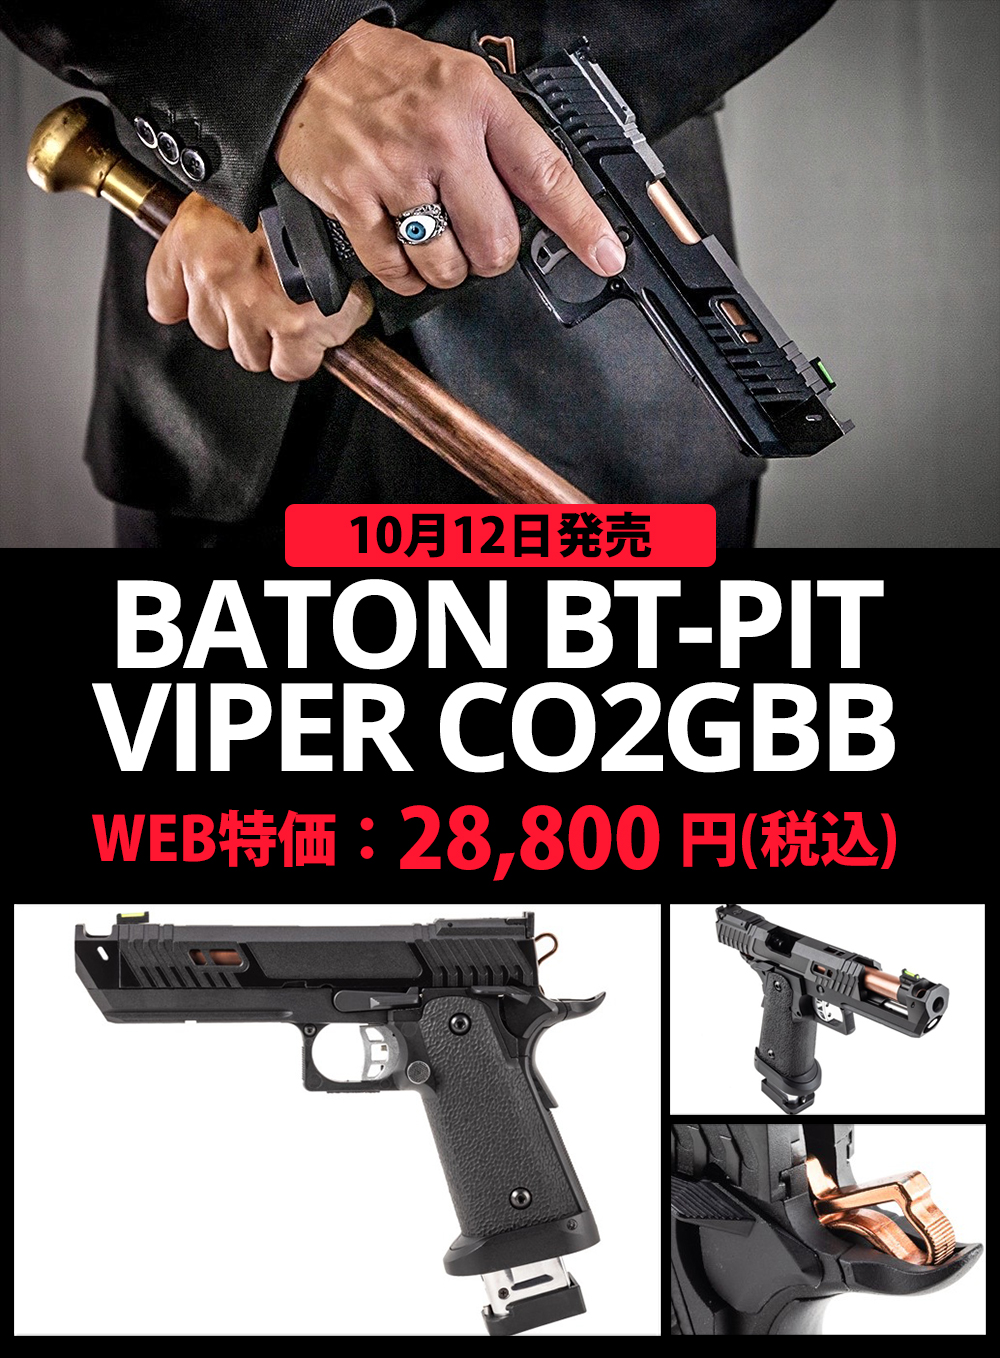 10/12発売 BATON BT-PIT VIPER CO2GBB | その他 エアガン,その他の